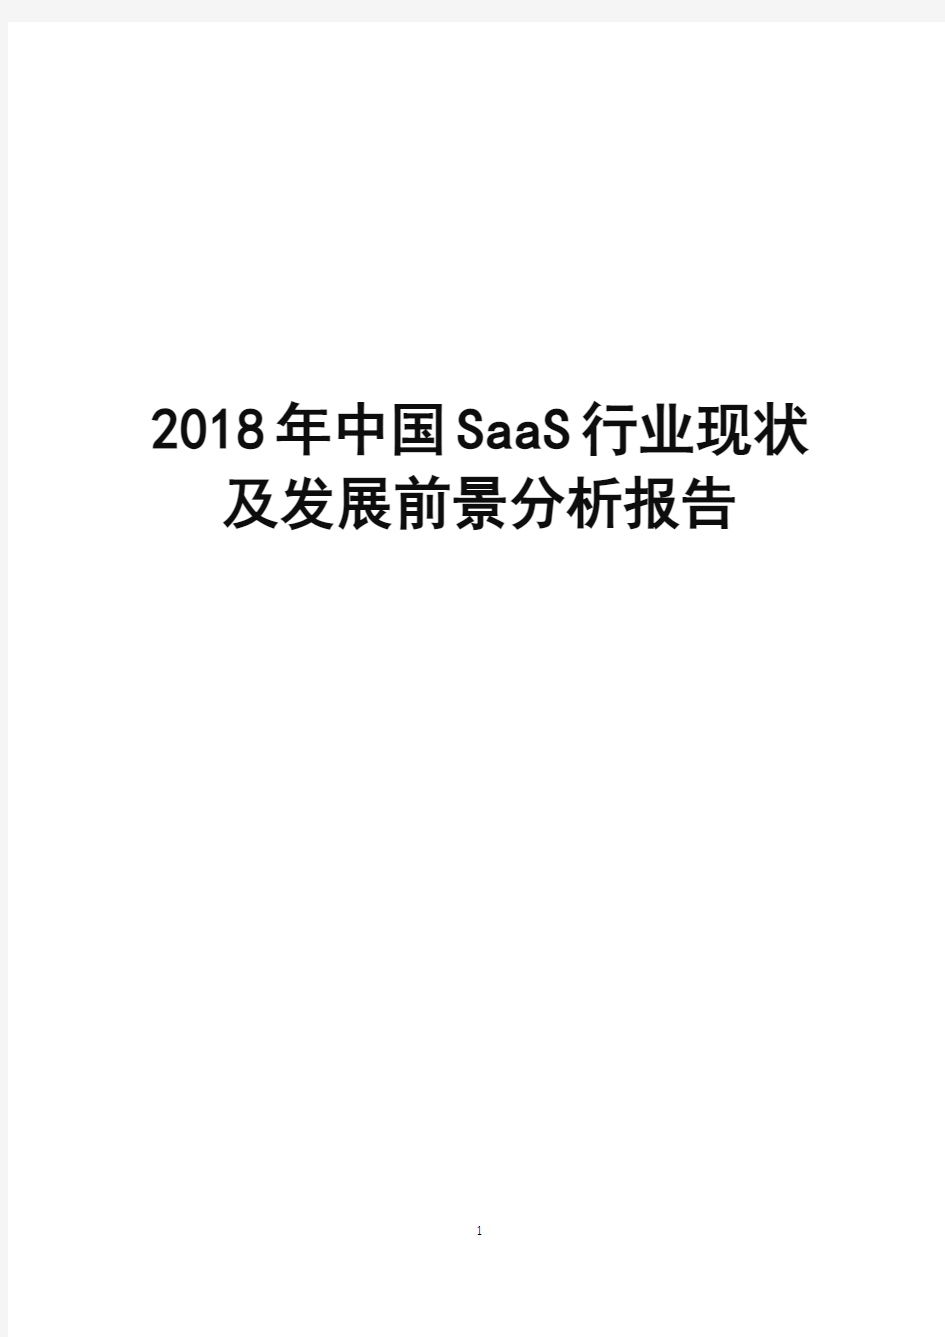 2018年中国SaaS行业现状及发展前景分析报告